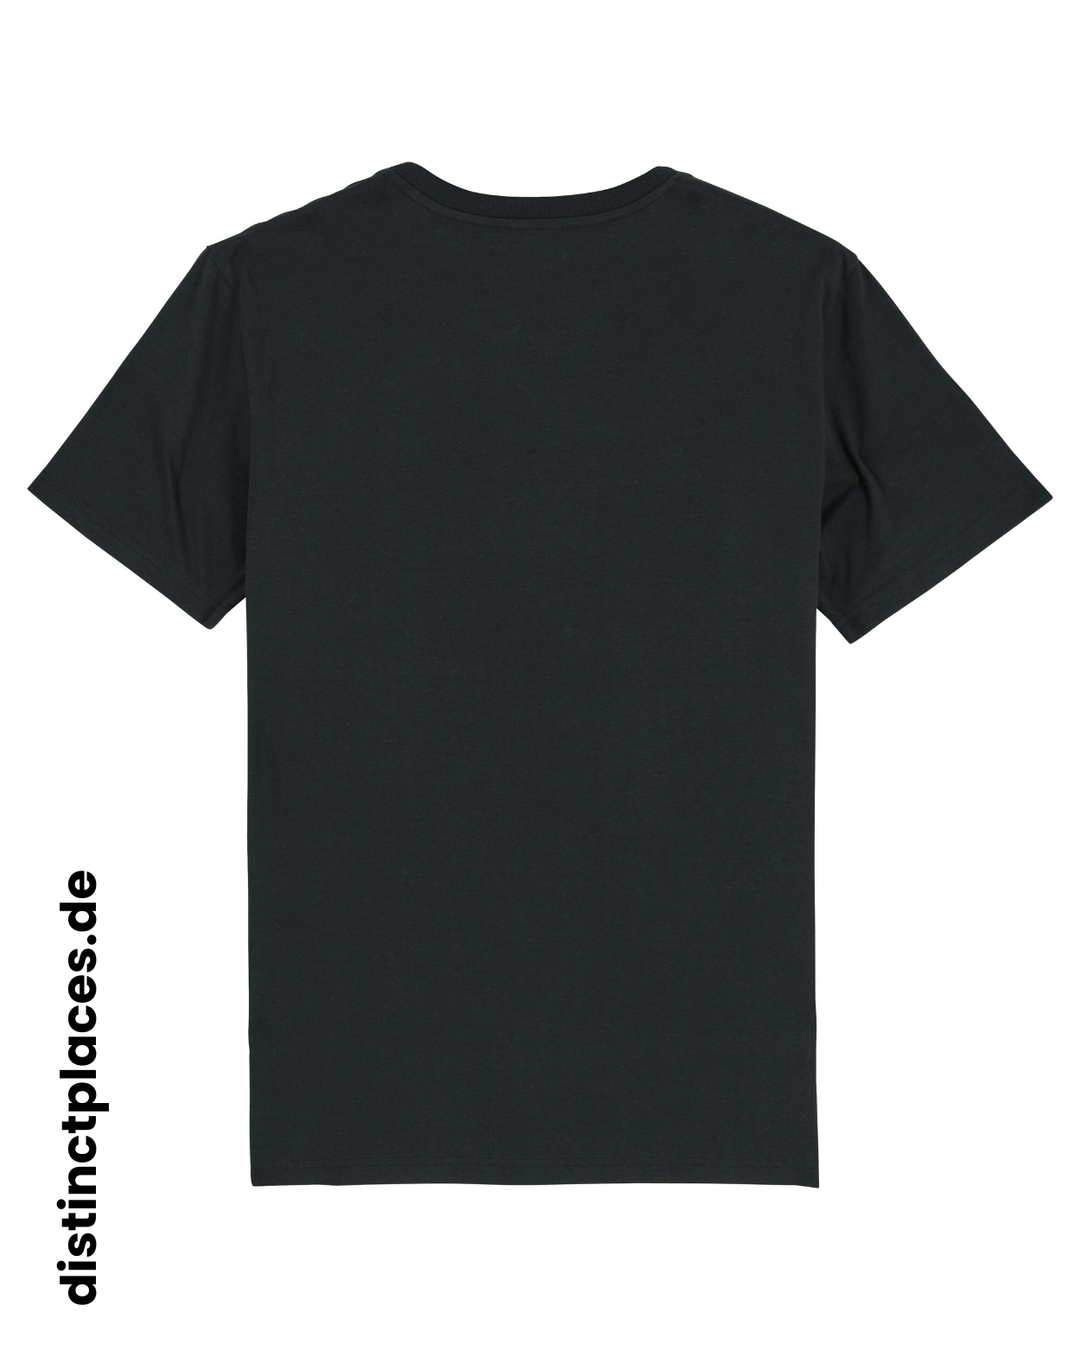 Schwarzes fairtrade, vegan und bio-baumwoll T-Shirt von hinten mit einem minimalistischem weißen Logo, beziehungsweise Wappen für Baden-Wuerttemberg